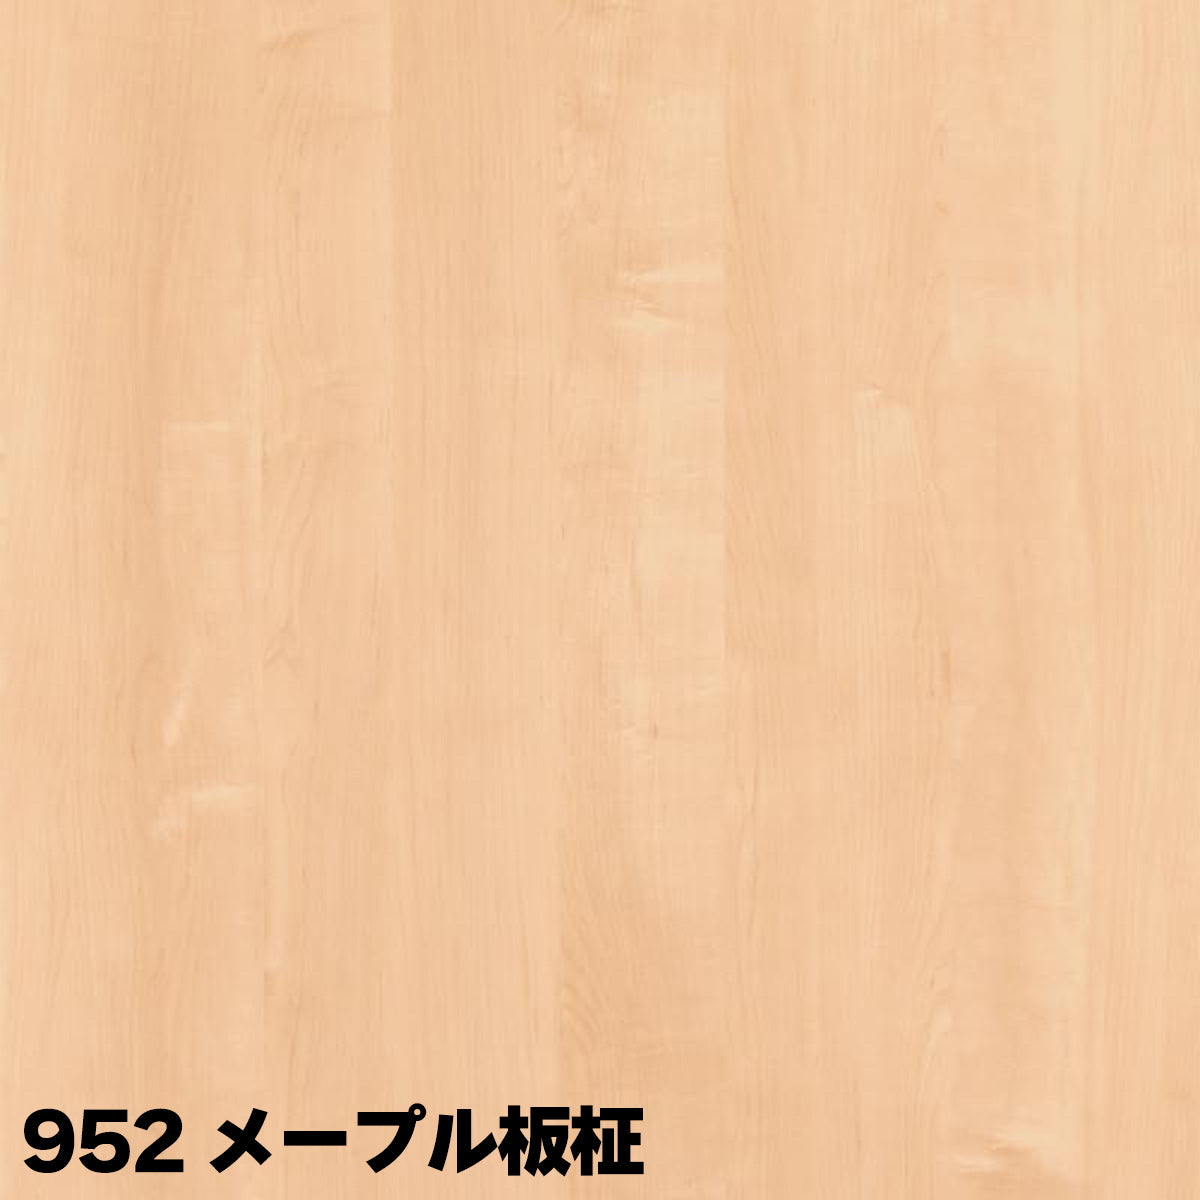 厚さ15mm ランバーポリ 木目調6色 オーダーカット 木口テープ選択可能